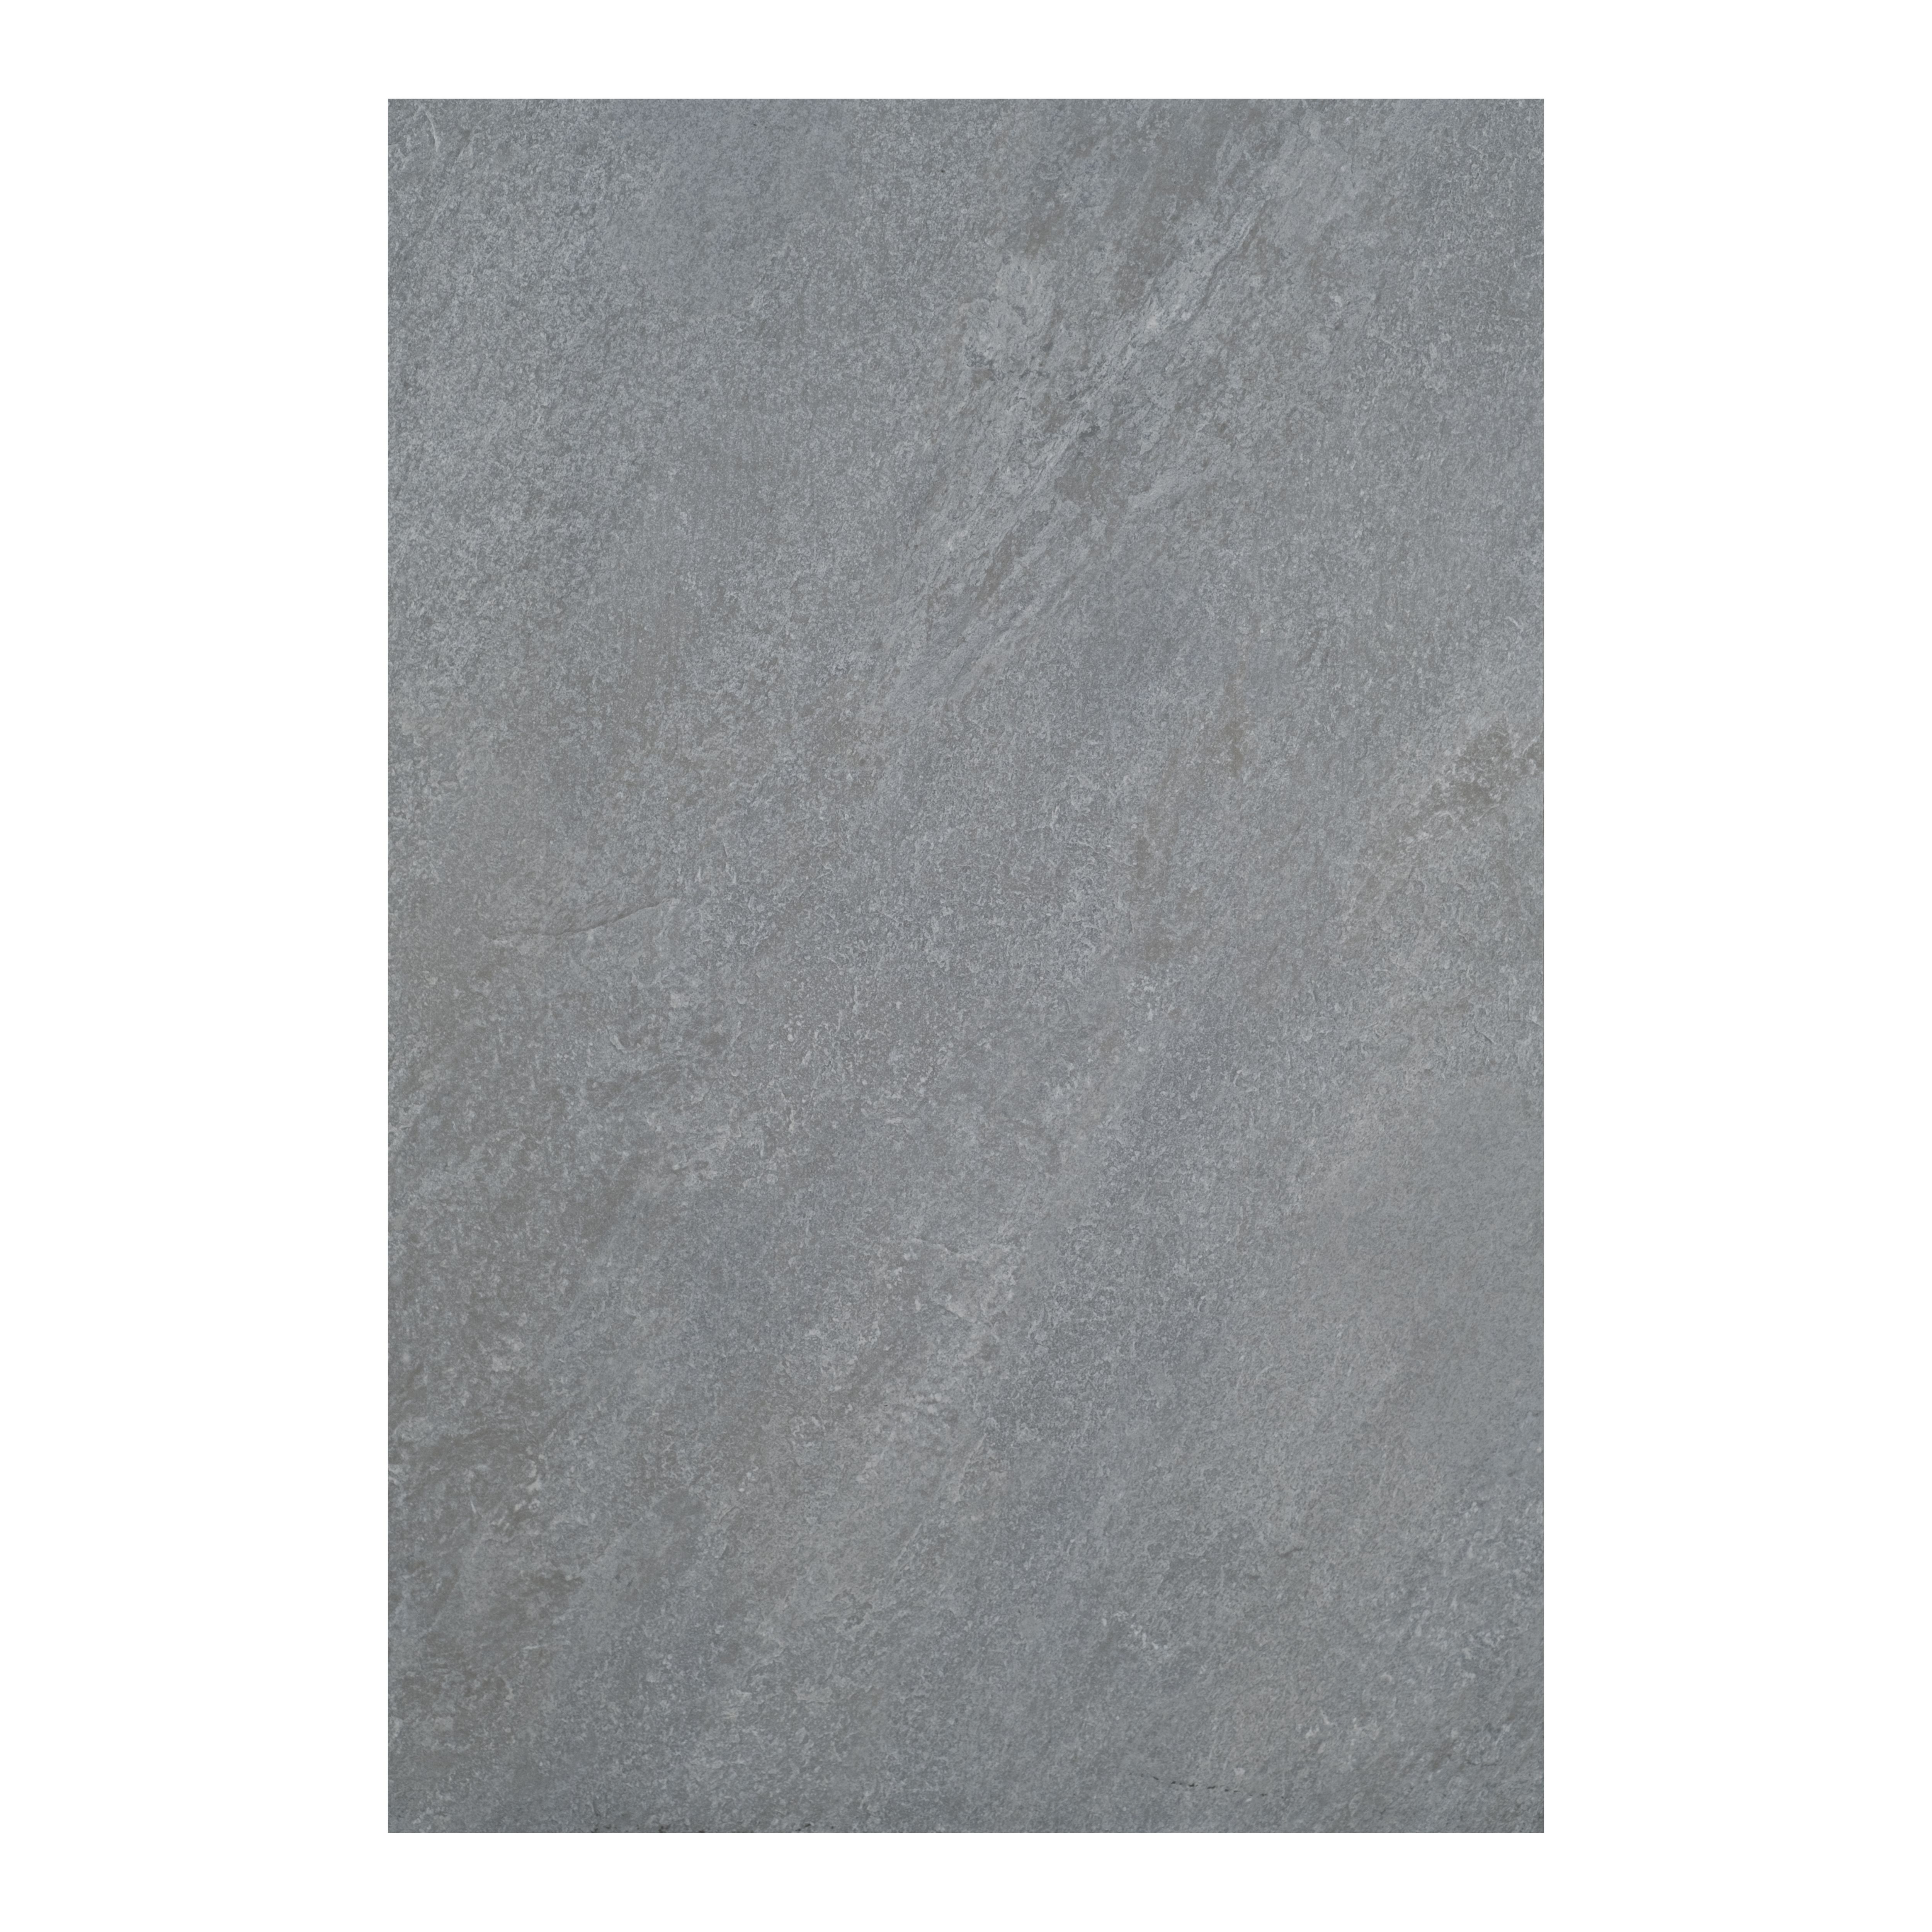 Dakota Grey Matt Stone effect Porcelain Outdoor Floor Tile, Pack of 2, (L)900mm (W)600mm